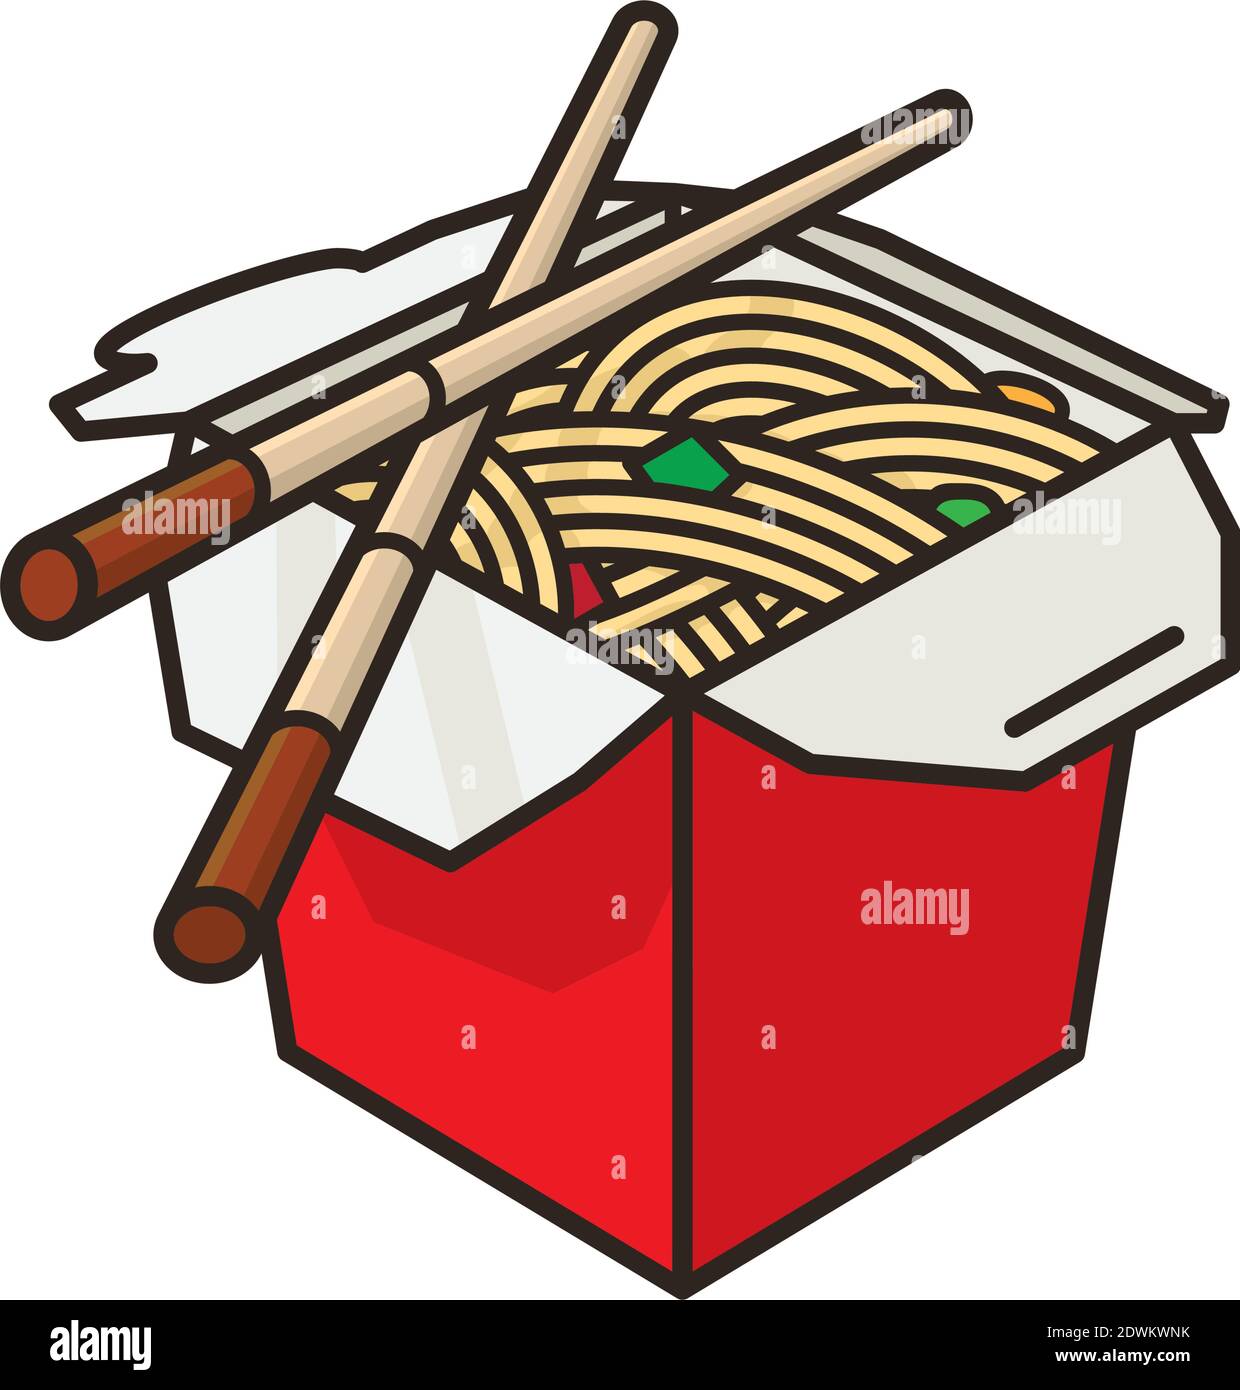 Chinesische Take-Out Food Box und Essstäbchen Vektor-Illustration für Chop Suey Day am 29. August. Asiatische Lebensmittel isoliert Farbsymbol. Stock Vektor